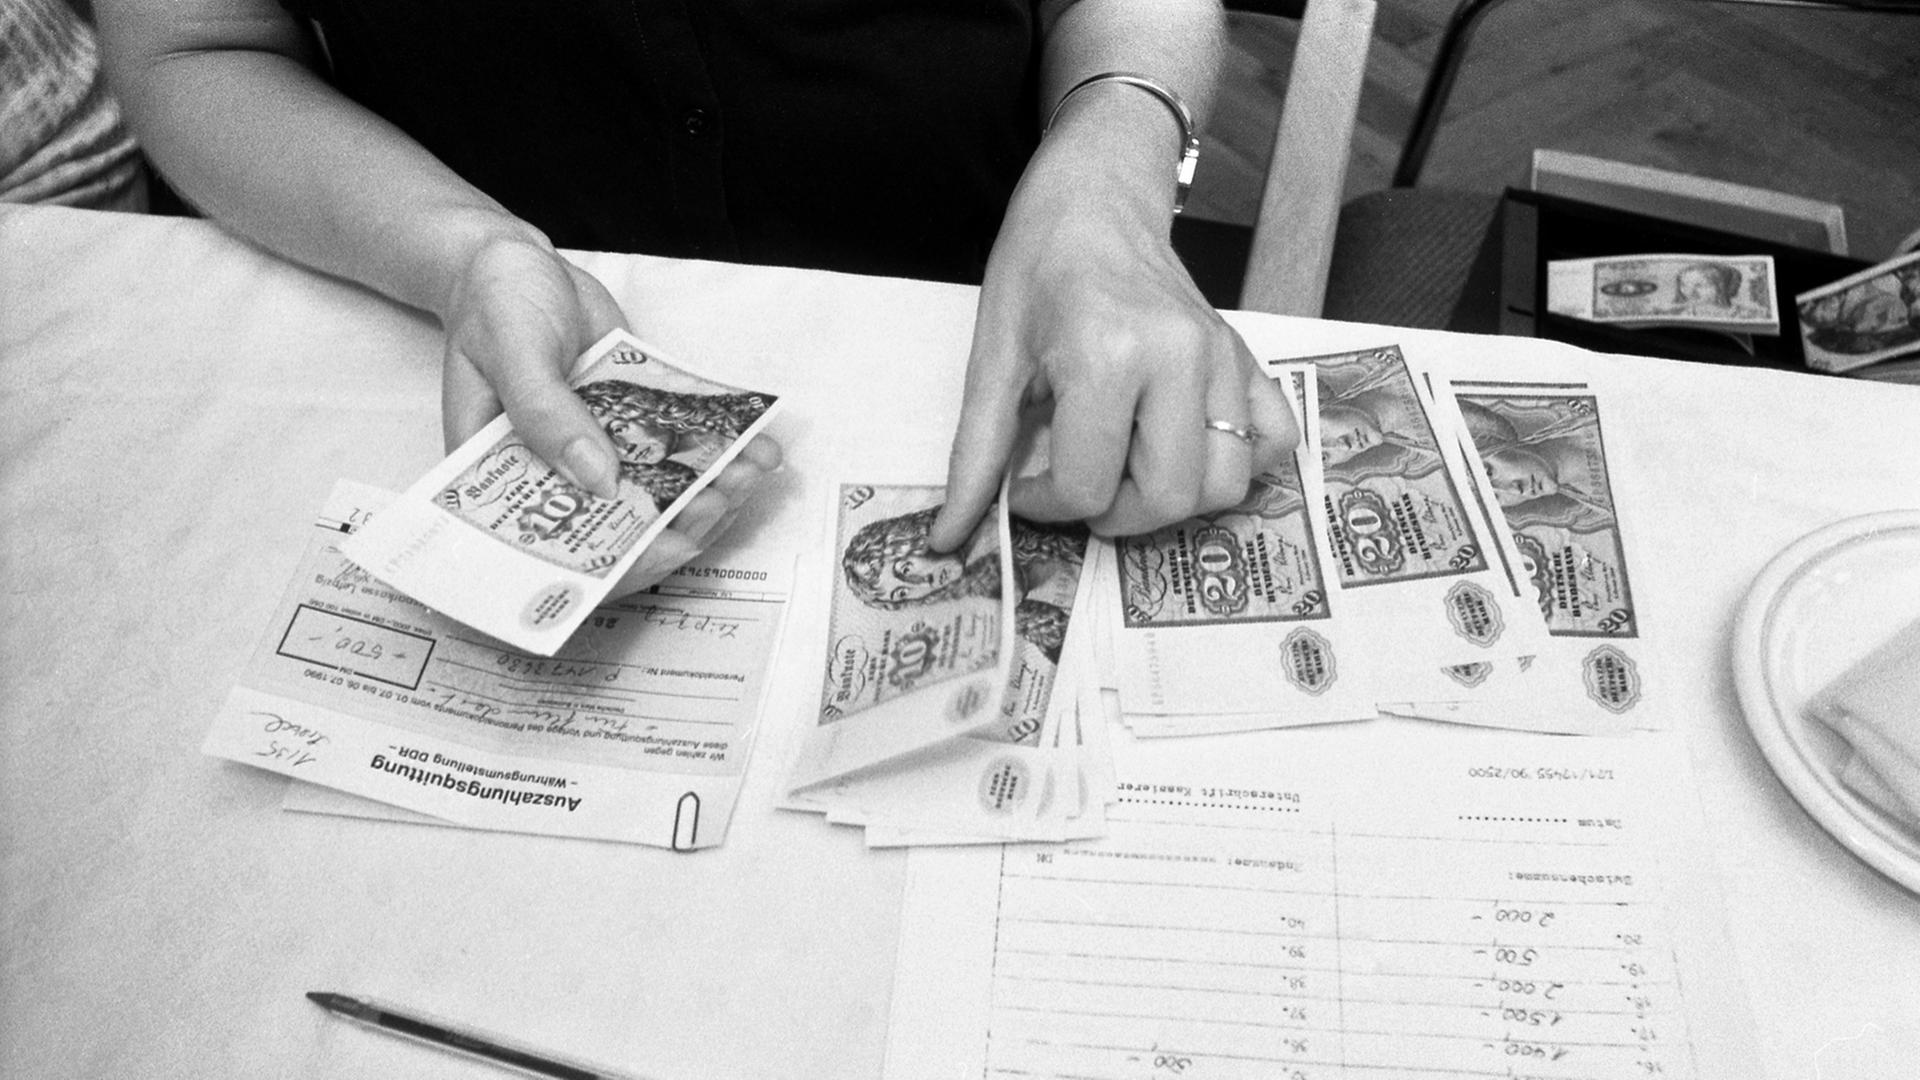 Ab dem 1. Juli 1990 wurde in der DDR die D-Mark als Zahlungsmittel eingeführt und an DDR-Bürger wie hier in Leipzig ausgezahlt.